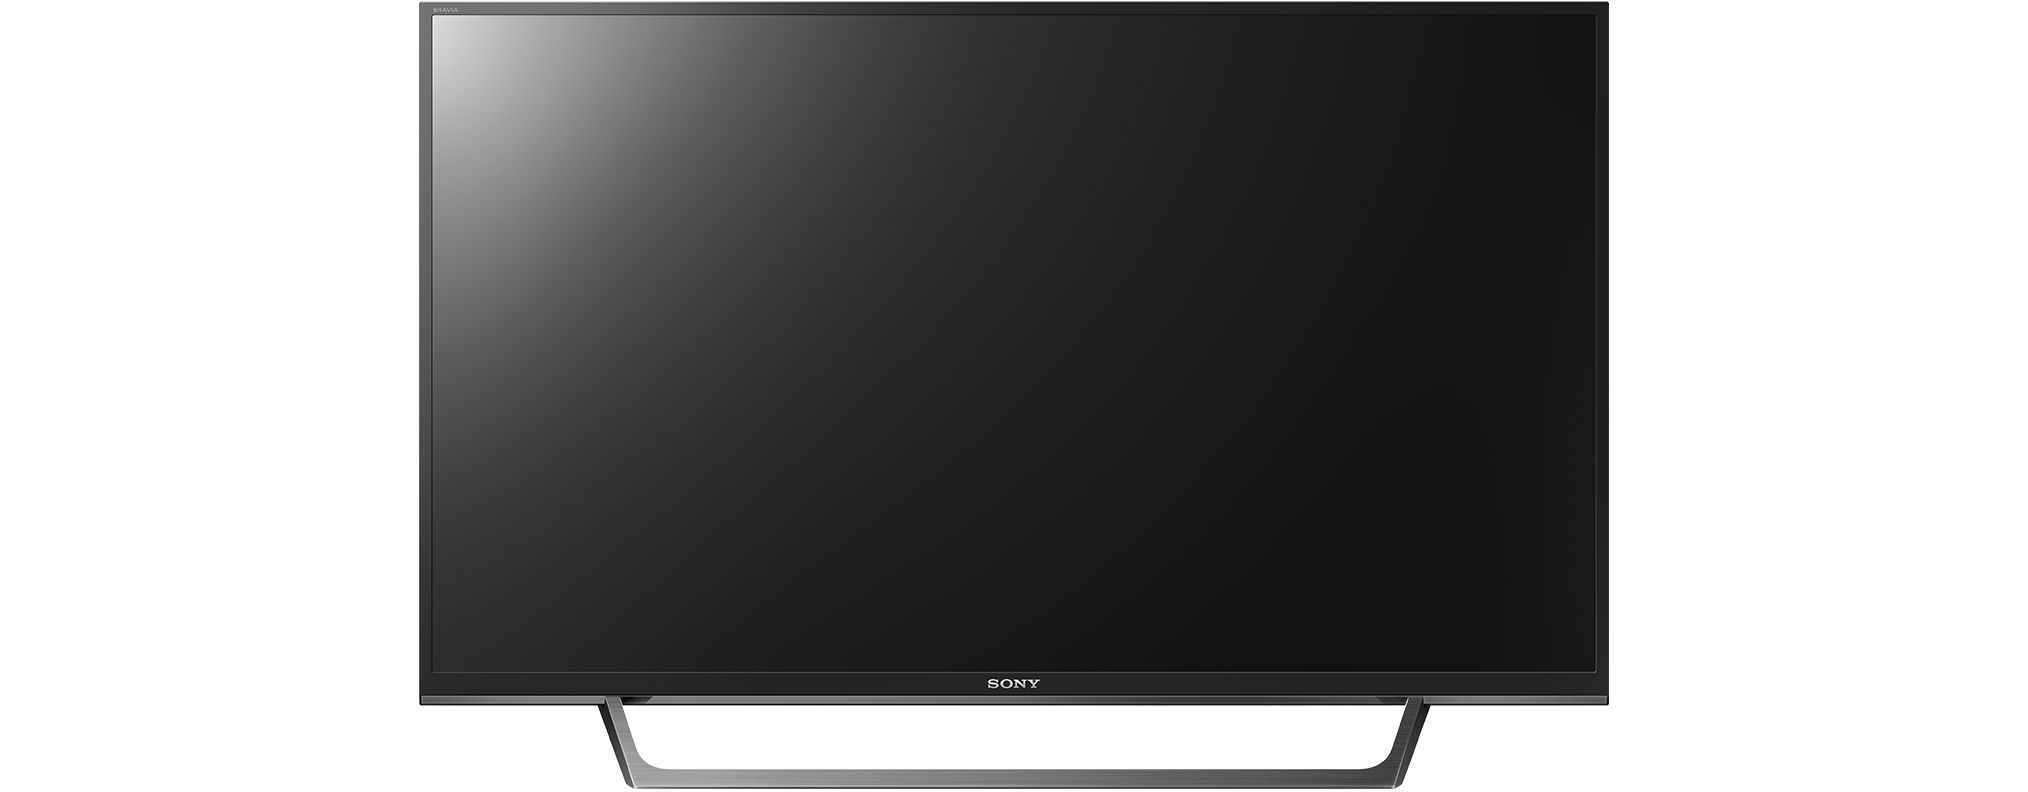 Linux) / HD-ready, KDL-32W6605 SONY (Flat, cm, 32 SMART TV, 80 LED TV Zoll